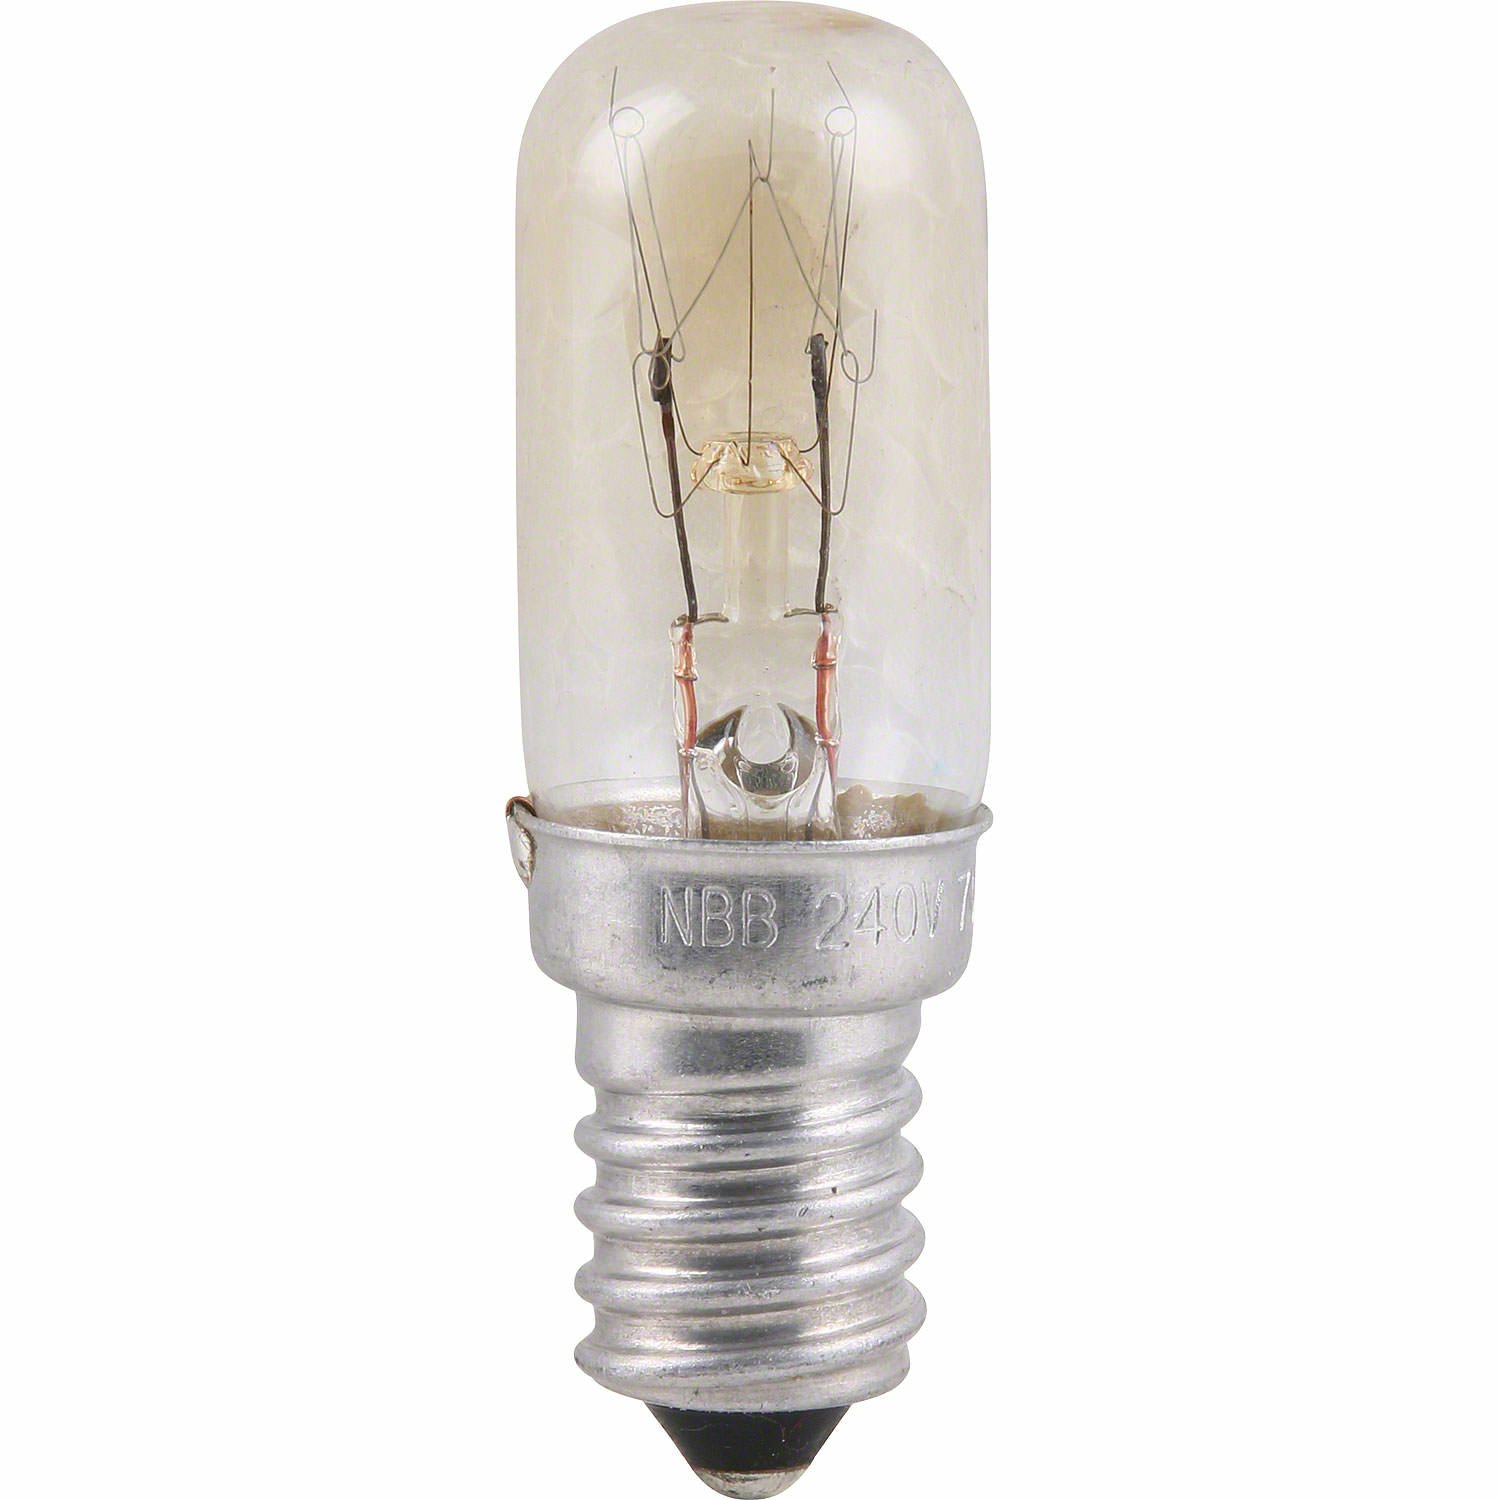 Radio Tube Lamp - E14 Socket - 120V/15W by Erzgebirge-Palast